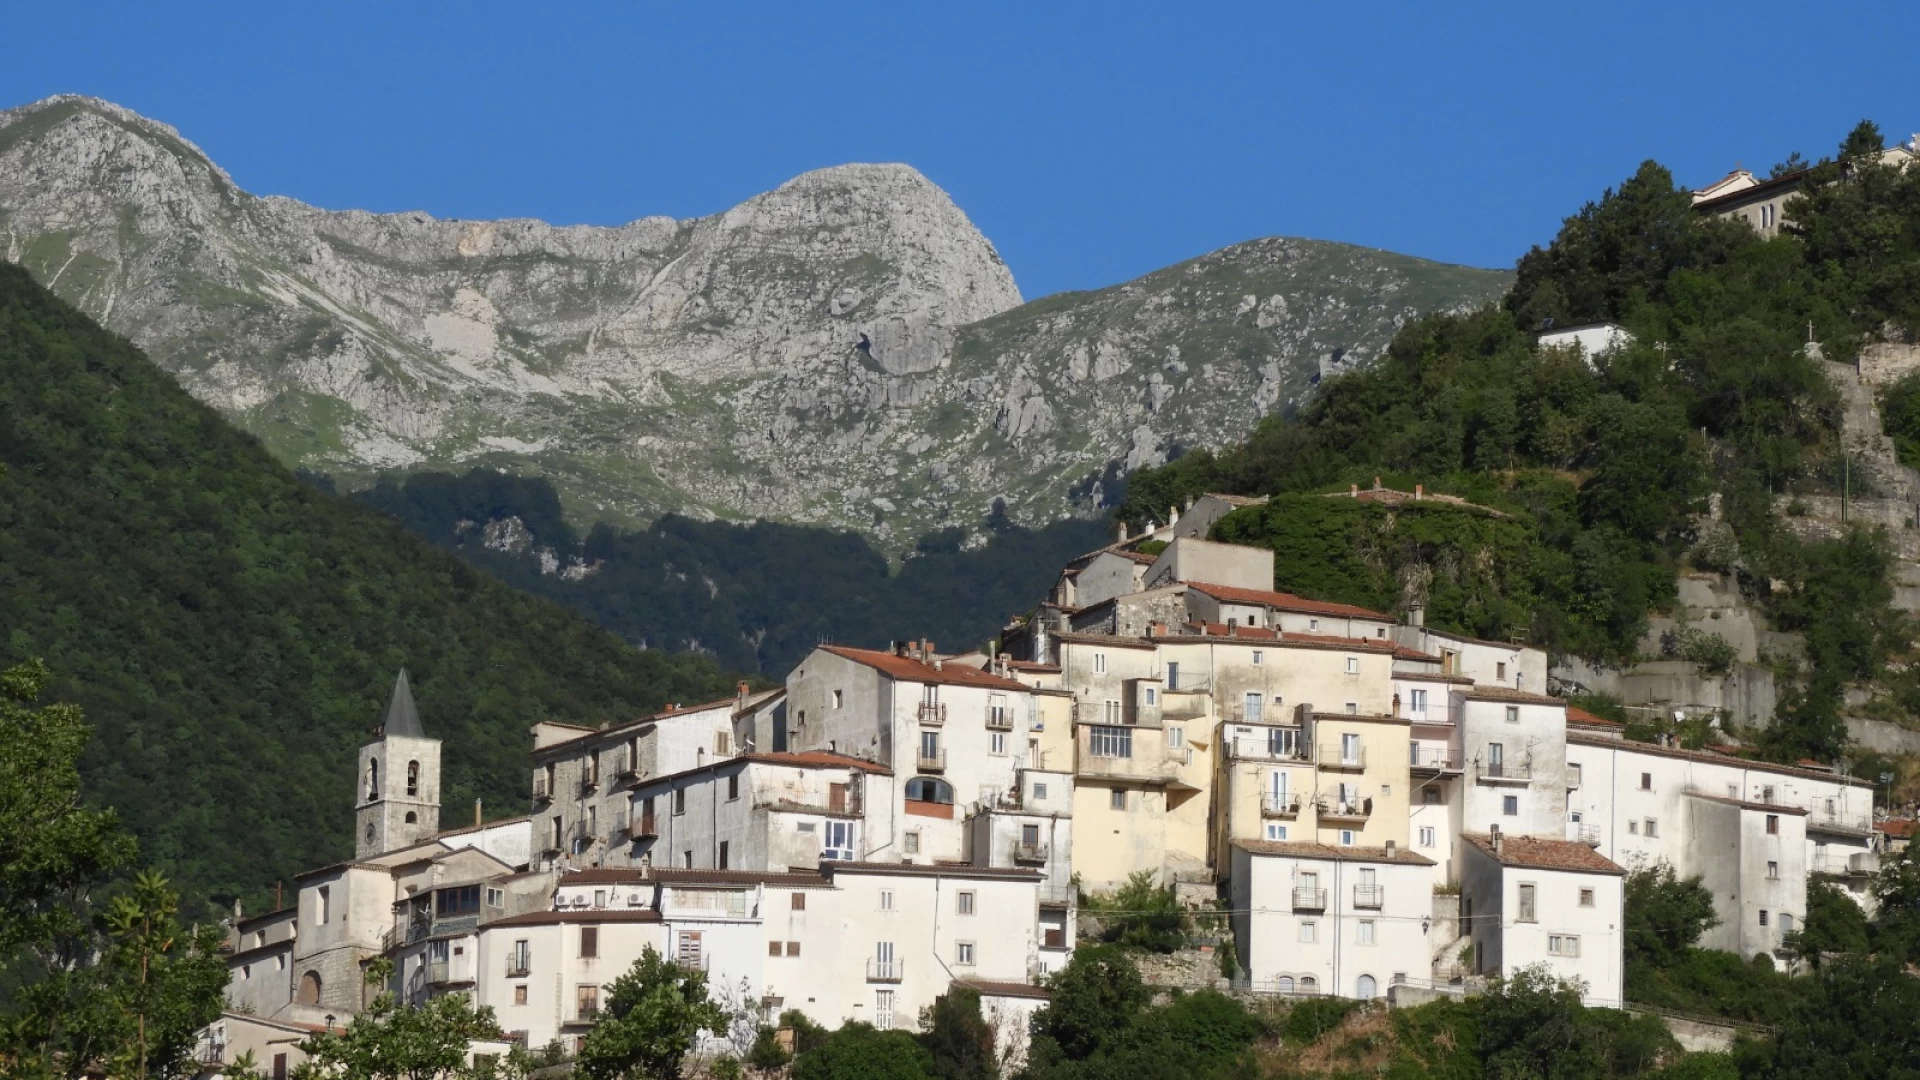 Le guide ambientali escursionistiche del Molise e dell’Abruzzo si esprimono contro il progetto dell’Enel “Pizzone II”